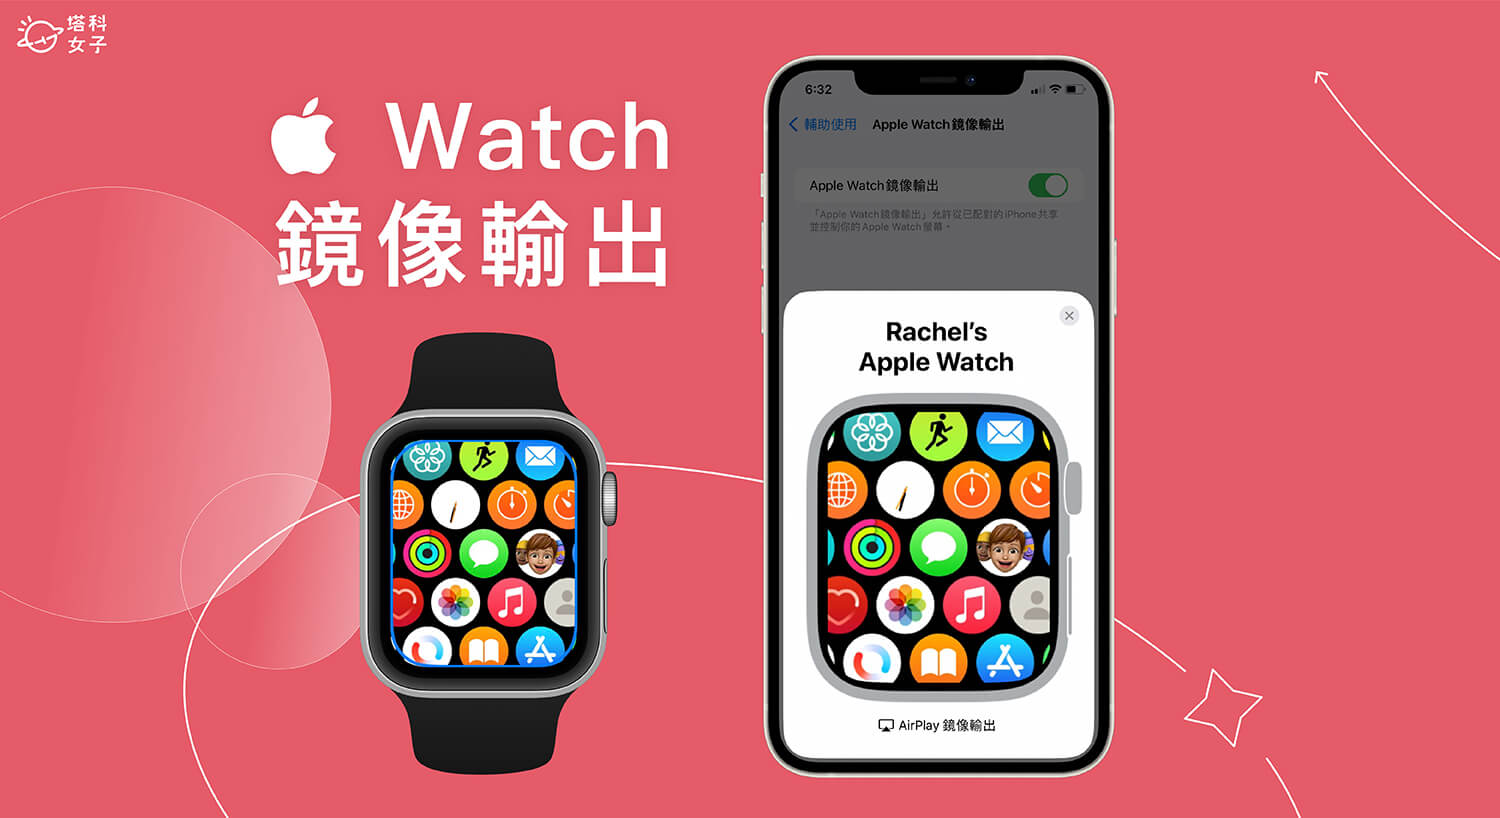 Apple Watch 鏡像輸出 iPhone，分享手錶畫面到 iPhone 適合螢幕錄影